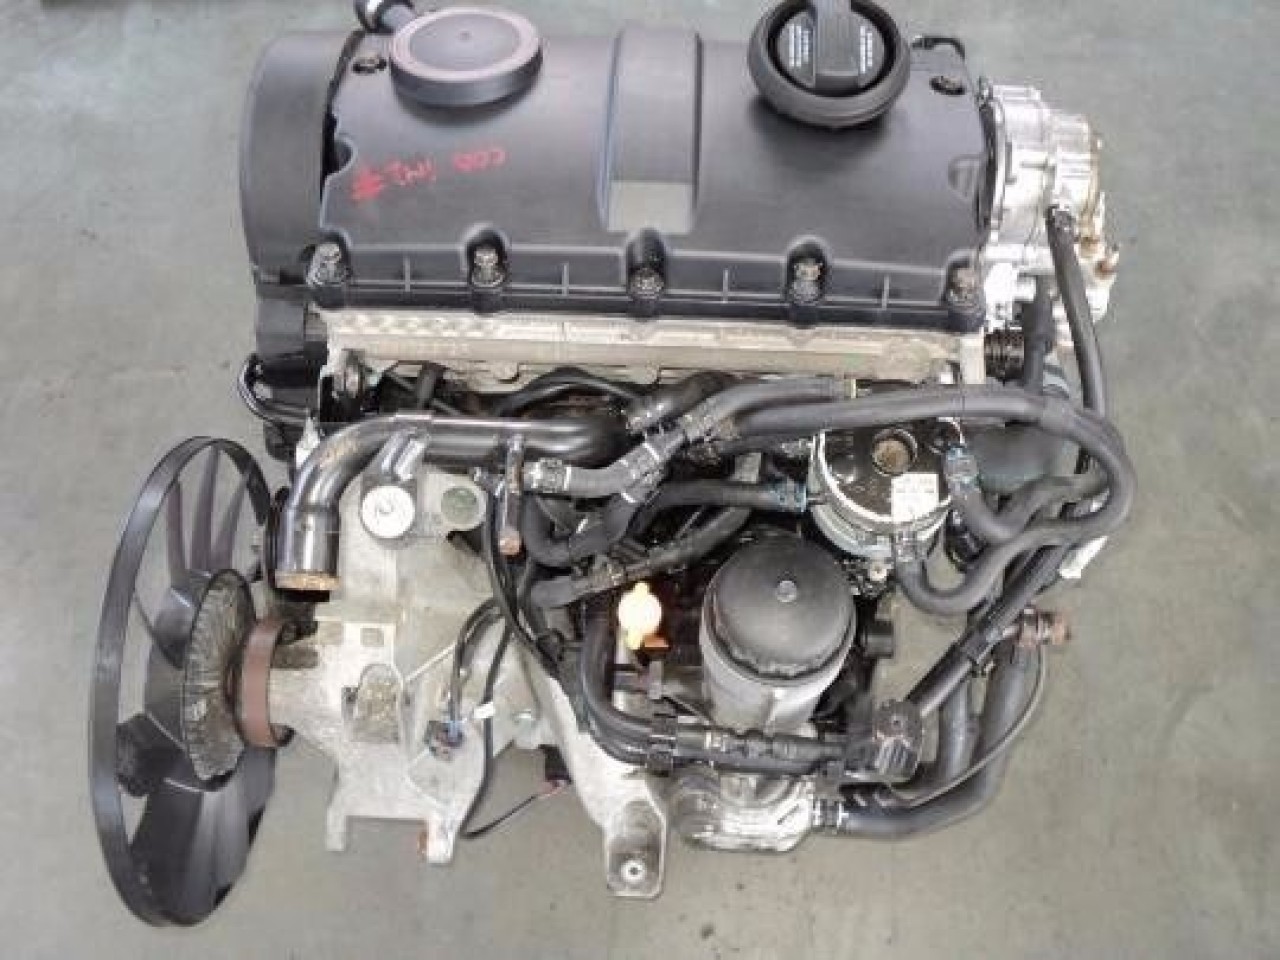 Купить мотор 1.9. Двигатель AVF 1.9 TDI. Двигатель 1.9 TDI (AVF, AUY, BXE, AJM). Мотор Пассат б5 1.9 тди. Двигатель VW Passat b5 1.9 TDI.